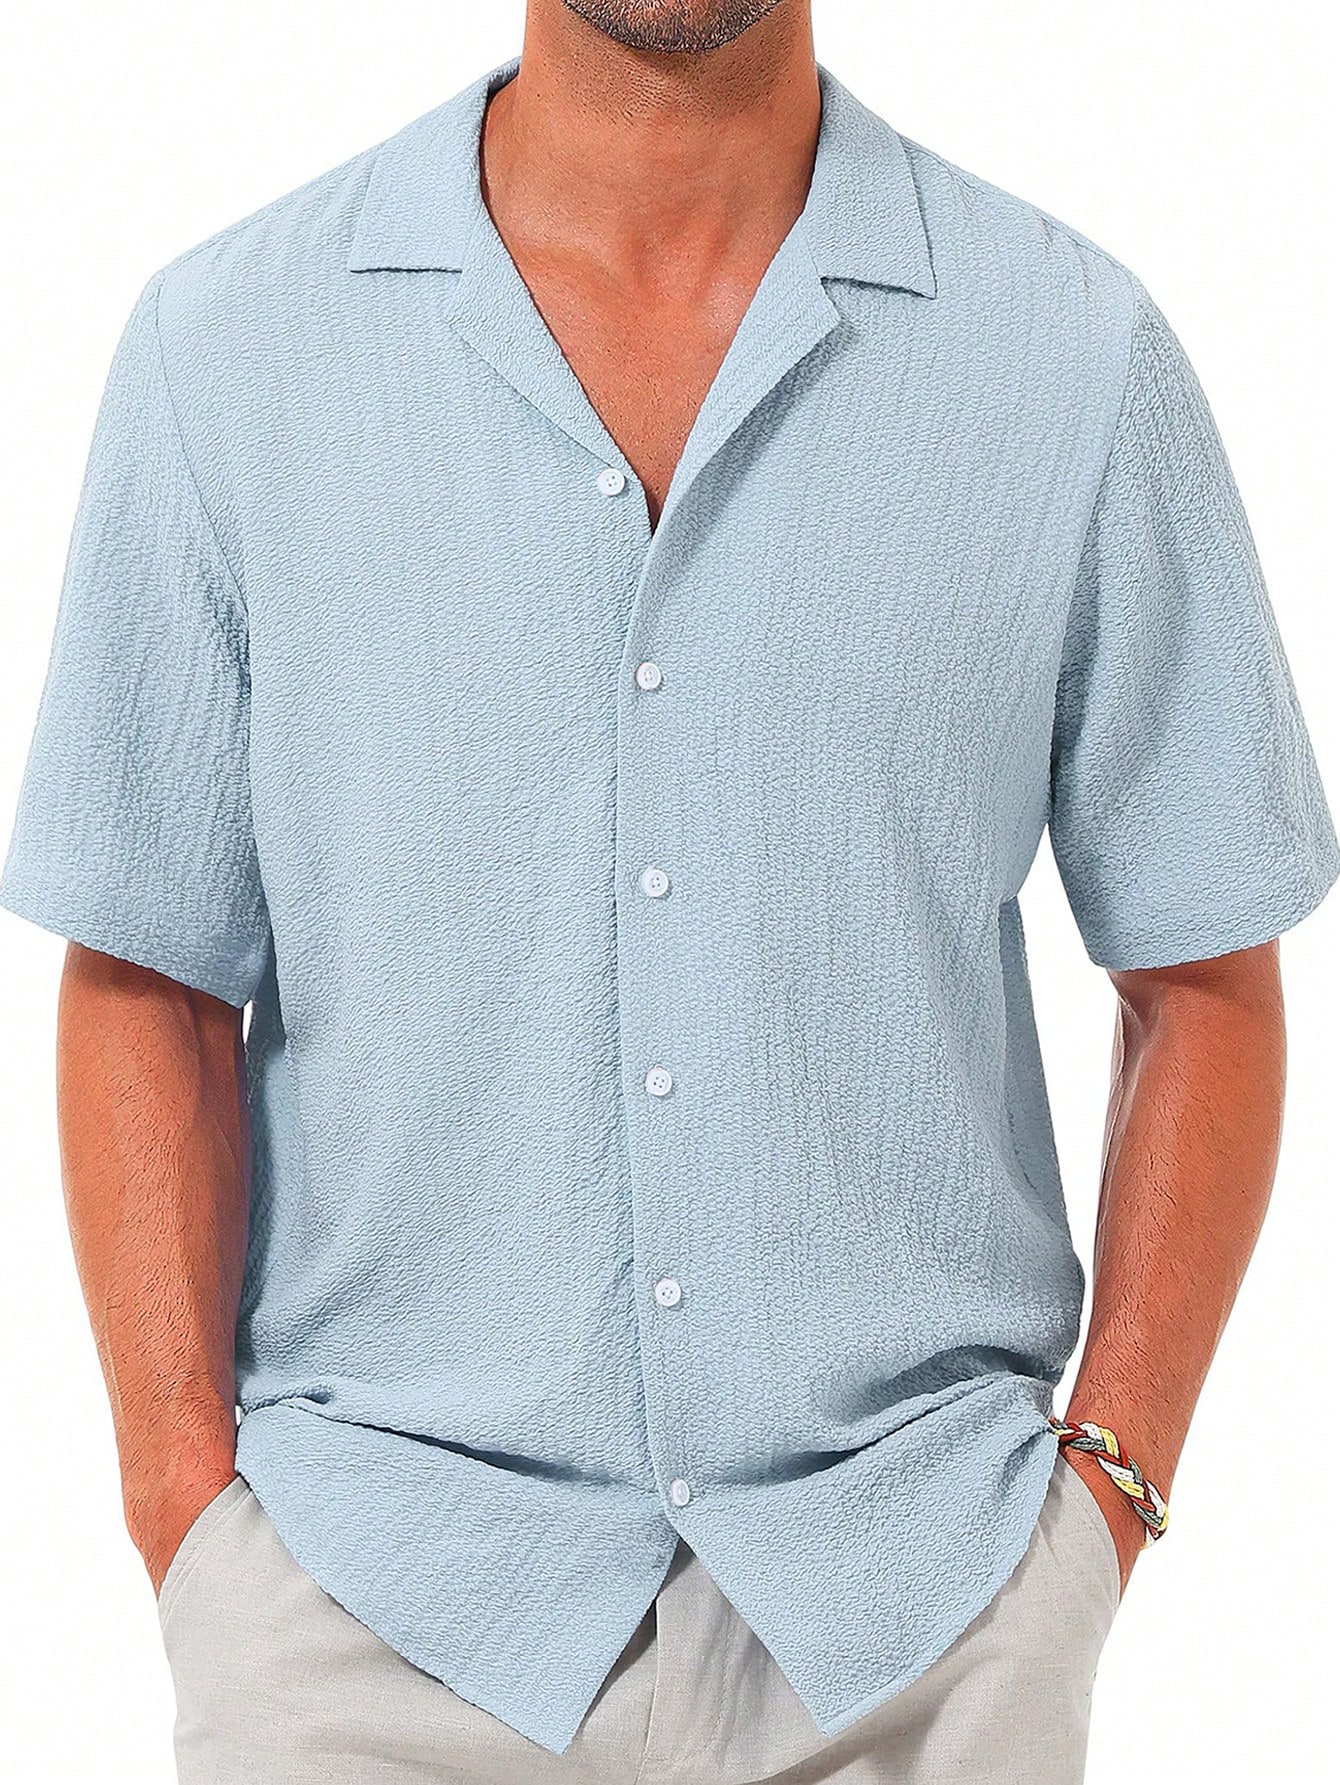 Мужская повседневная рубашка с коротким рукавом на пуговицах, синий рубашка мужская однотонная с коротким рукавом модная повседневная блуза оверсайз уличная одежда в корейском стиле 2021